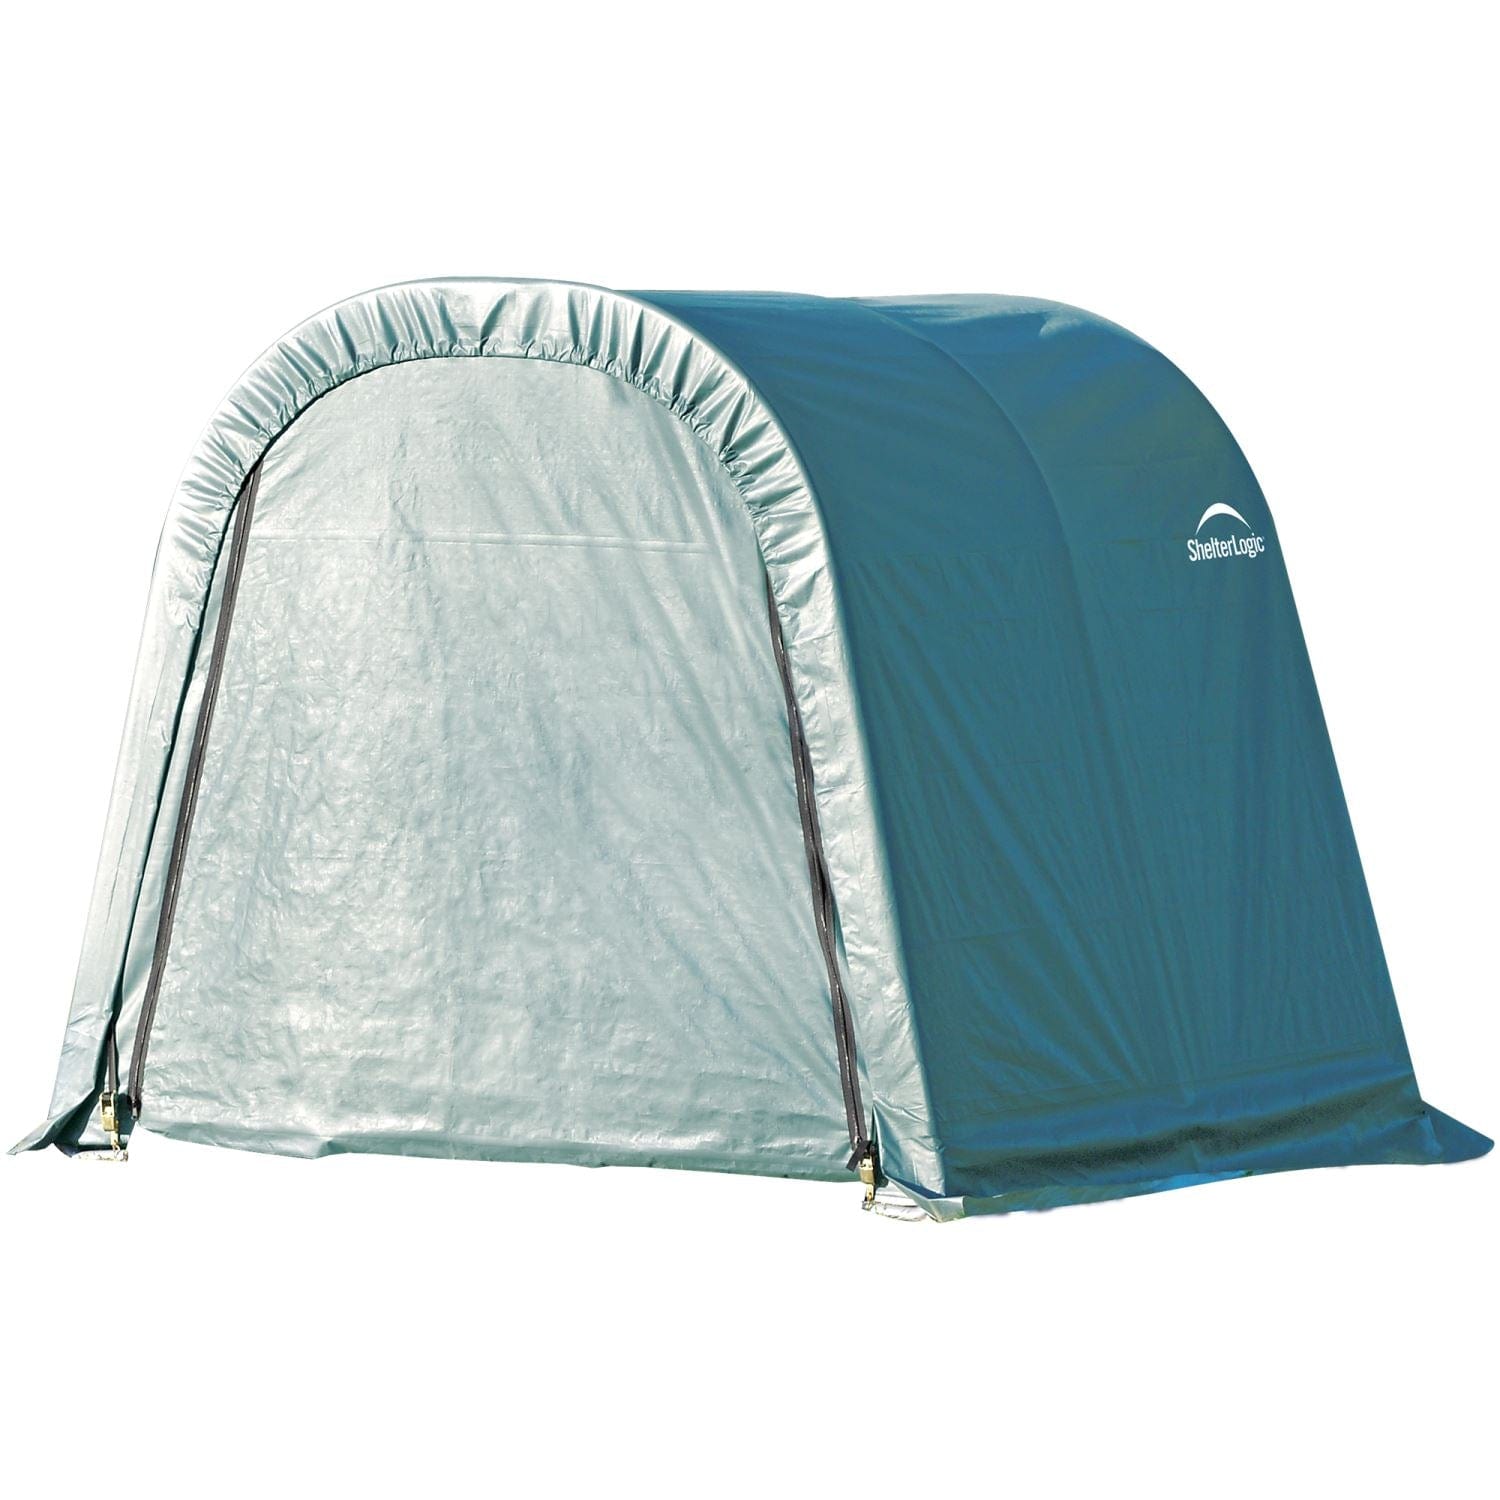 ShelterLogic Portable Garage ShelterLogic | ShelterCoat 8 x 8 ft. Wind and Snow Rated Garage Round Green STD 76804